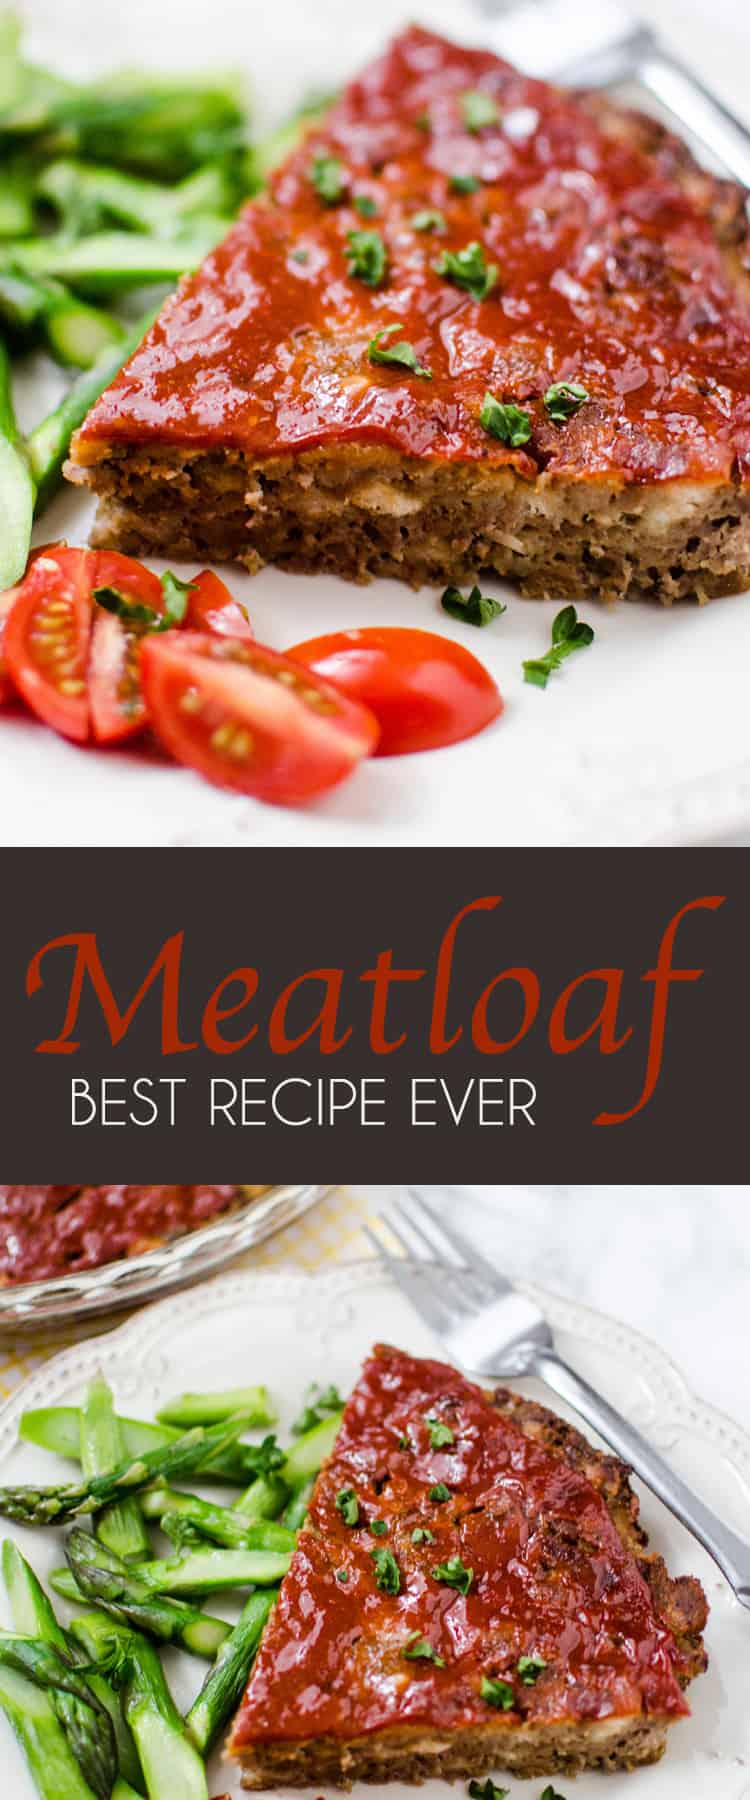 Best Meatloaf Recipe Ever